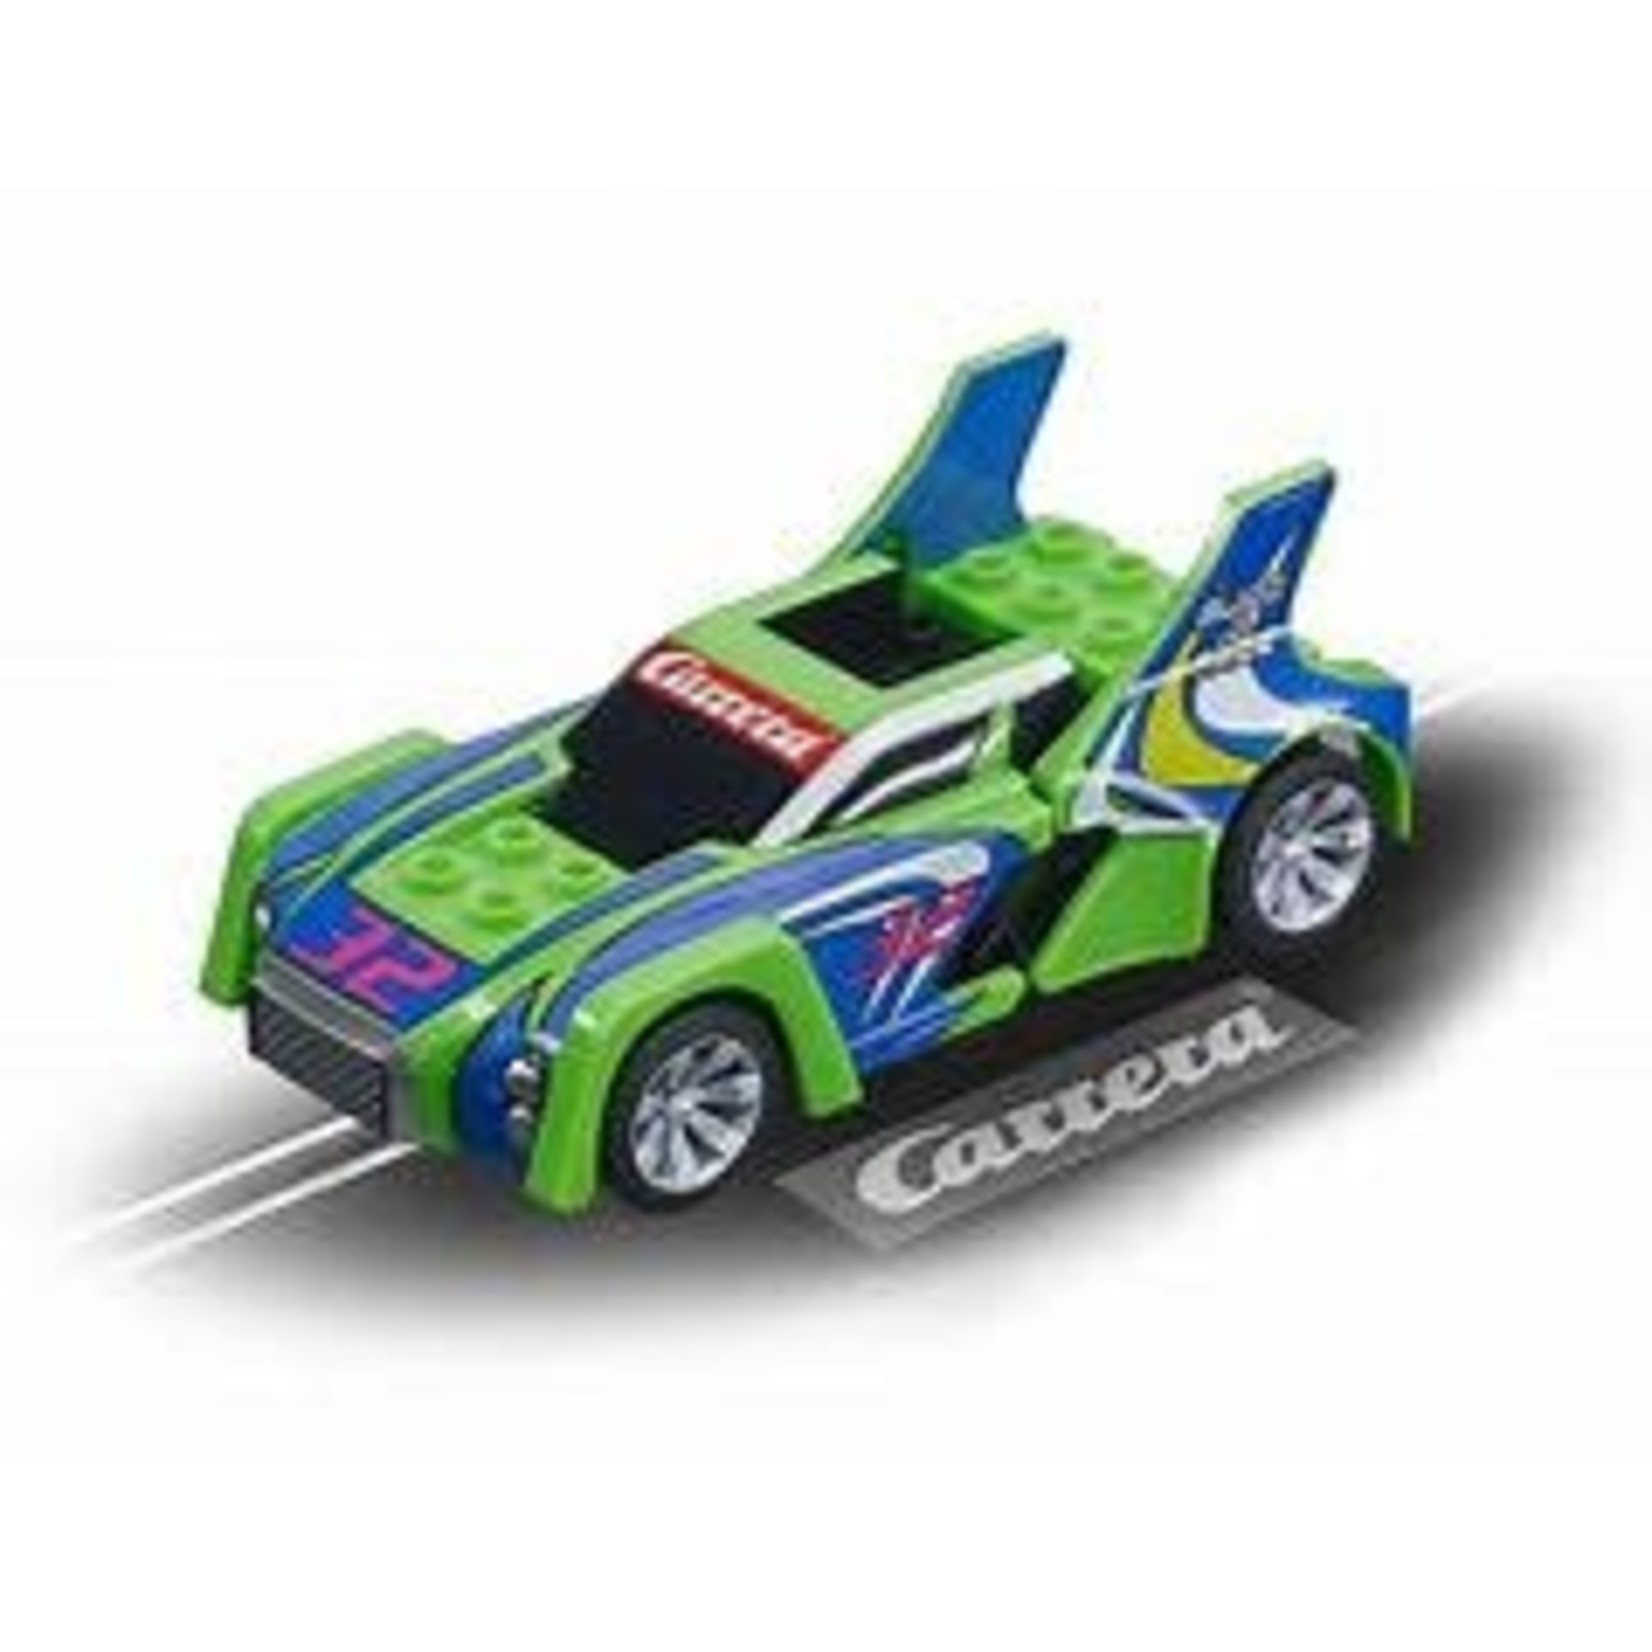 Carrera Build n Race - Race Car green